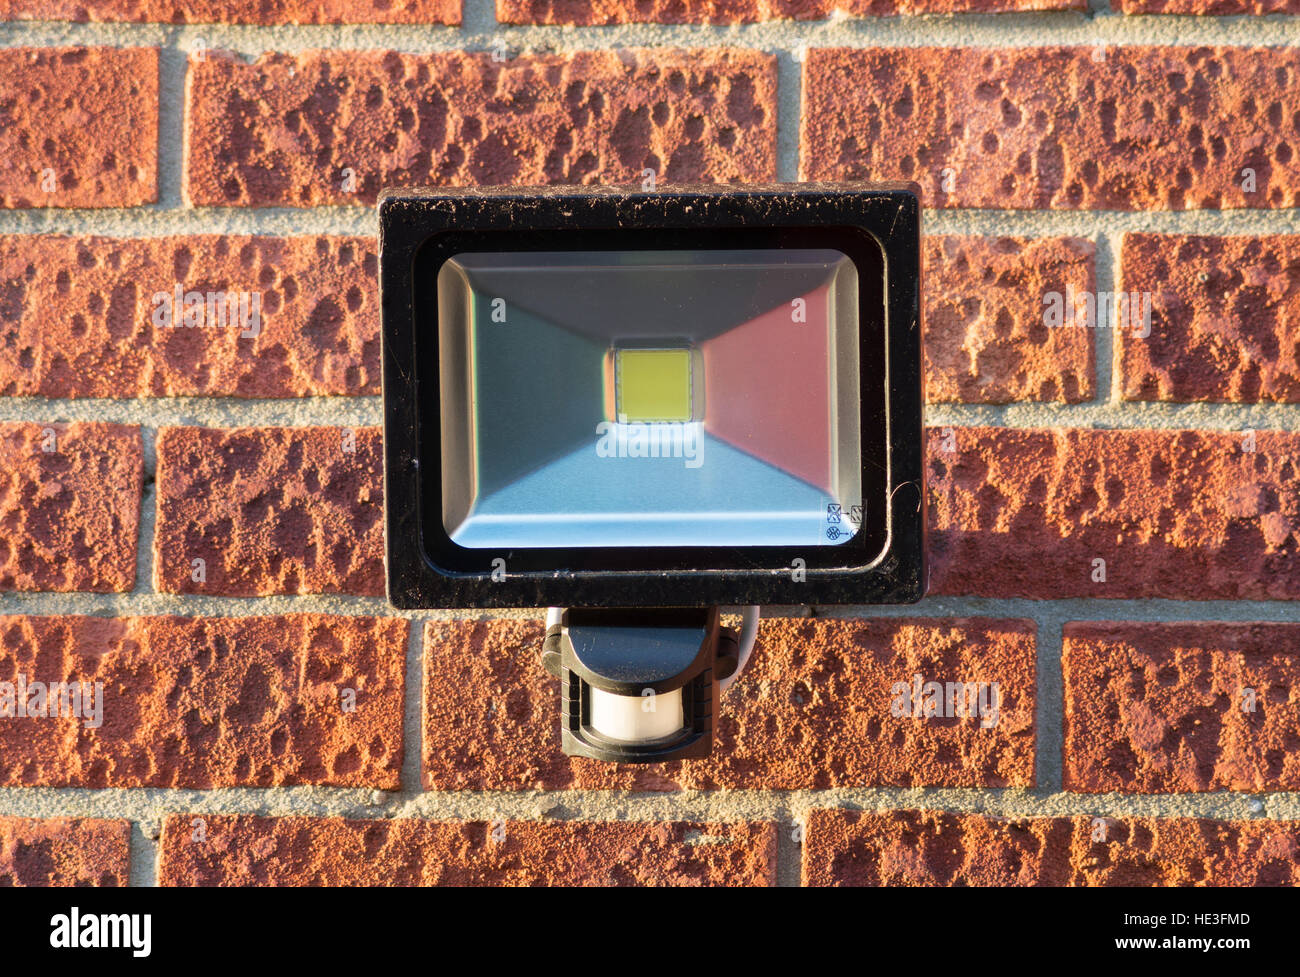 Projecteur de sécurité LED avec détecteur de mouvement PIR monté sur un mur de briques. Angleterre, Royaume-Uni. Banque D'Images